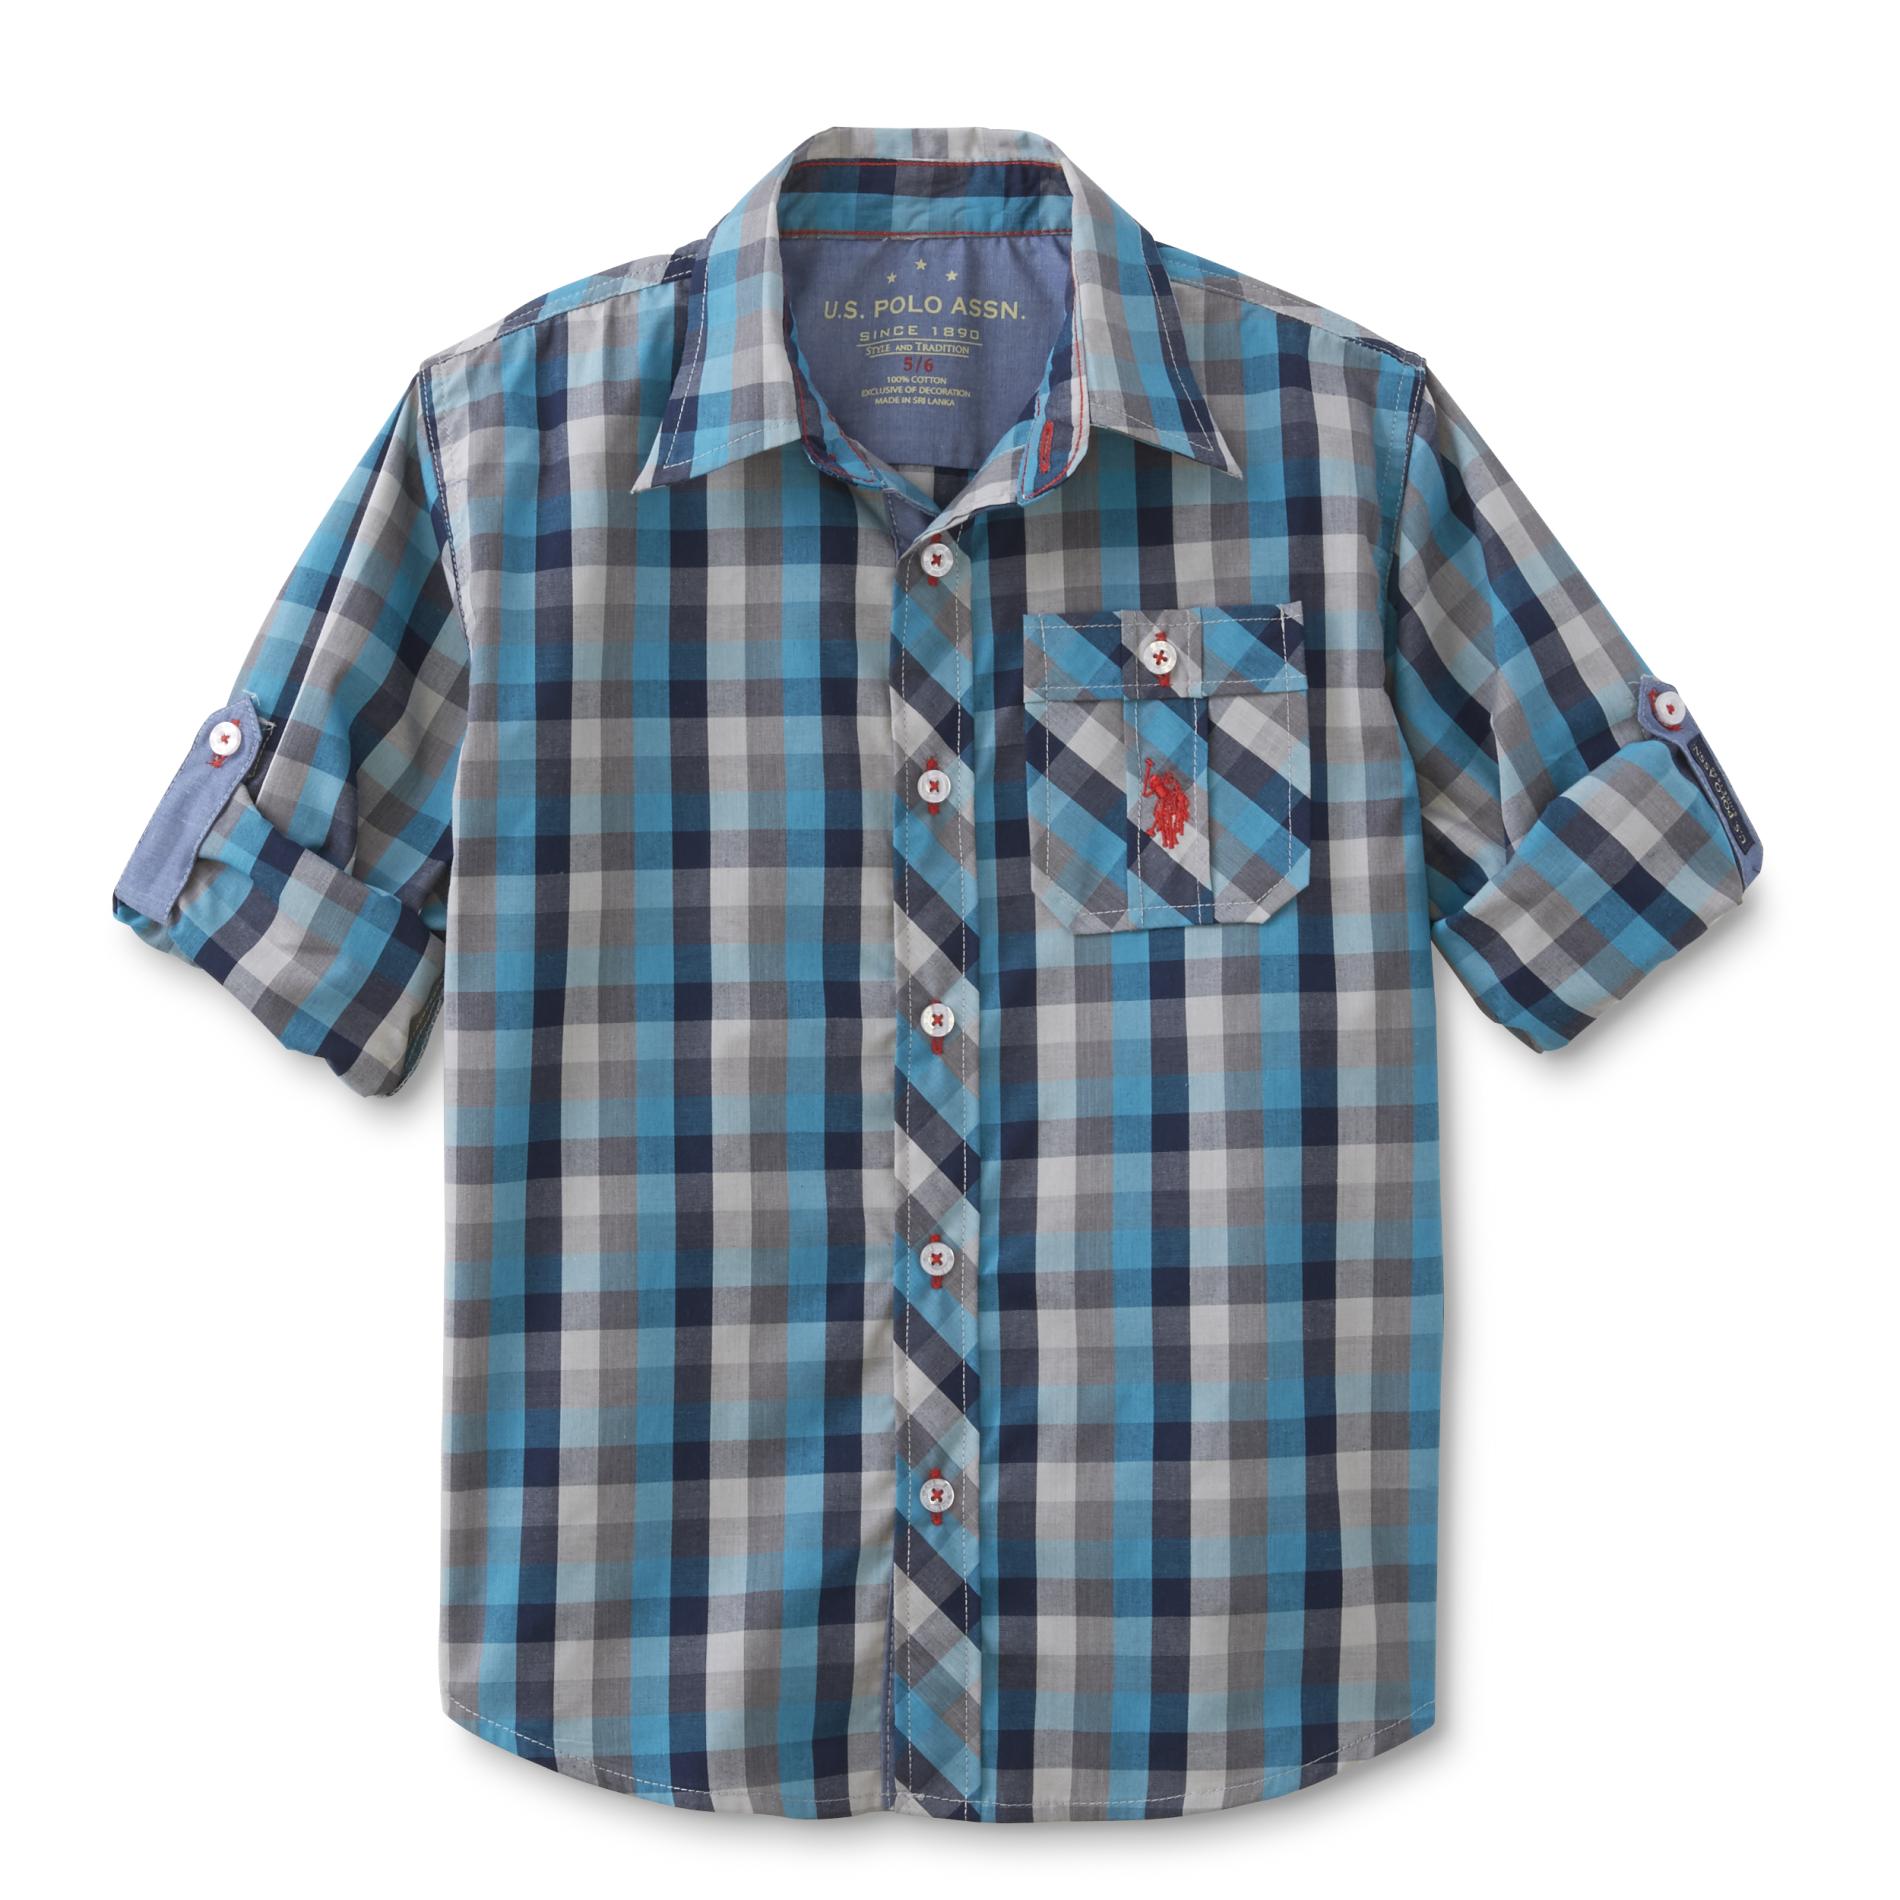 U.S. Polo Assn. Boy's Button-Front Shirt - Checkered